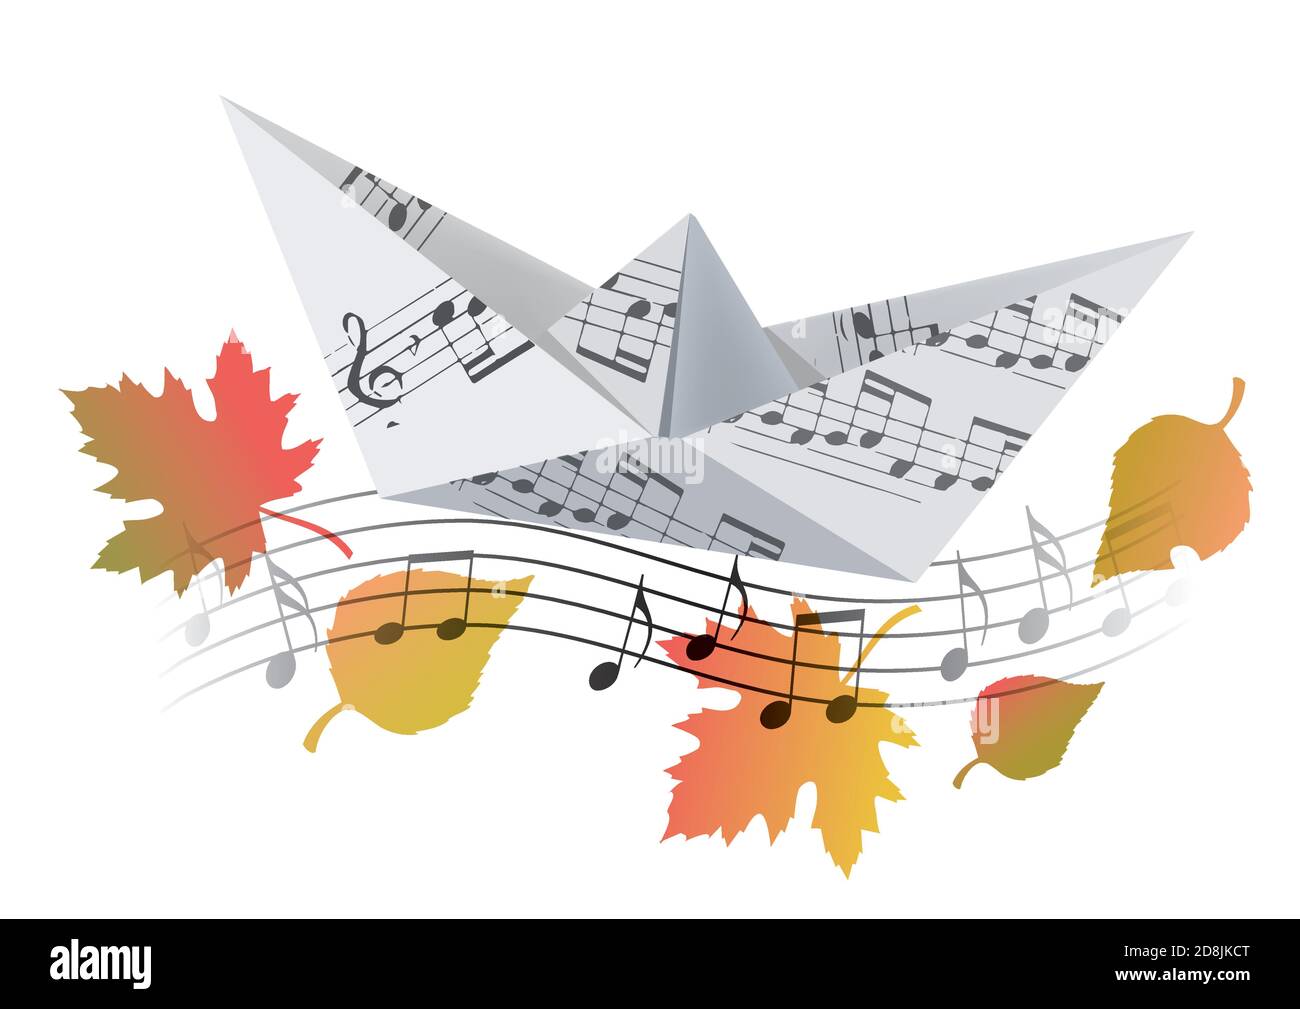 Bateau à l'origami avec notes musicales et feuilles d'automne. Illustration d'un modèle papier de bateau avec des notes de musique symbolisant la chanson d'automne. Vecteur disponible. Illustration de Vecteur